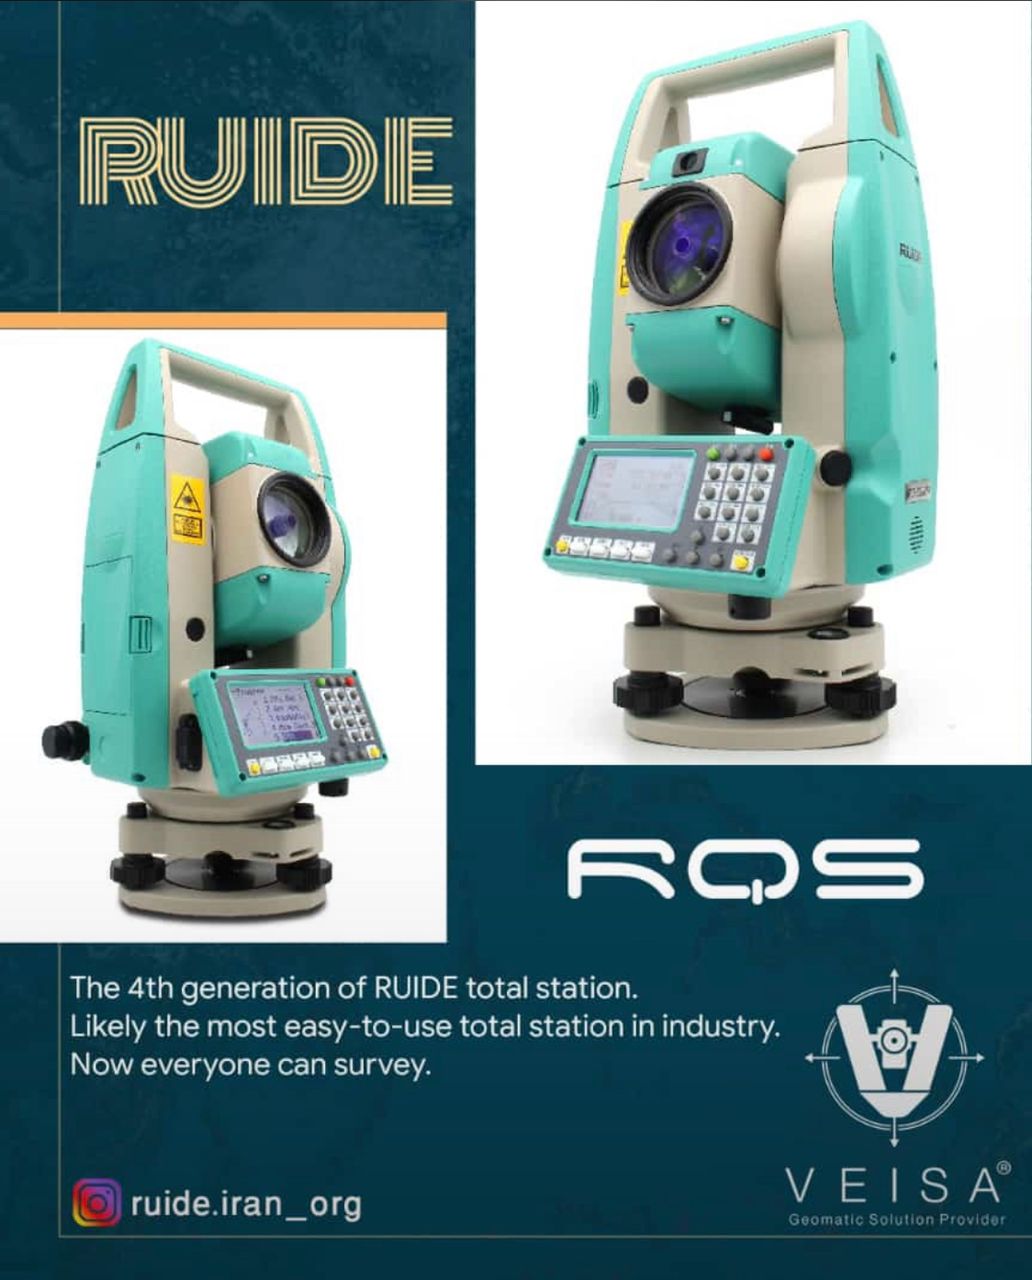 فروش ویژه نسل جدید توتال استیشن روید Ruide R2 pro با تکنولوژی و گارانتی نیکون ژاپن